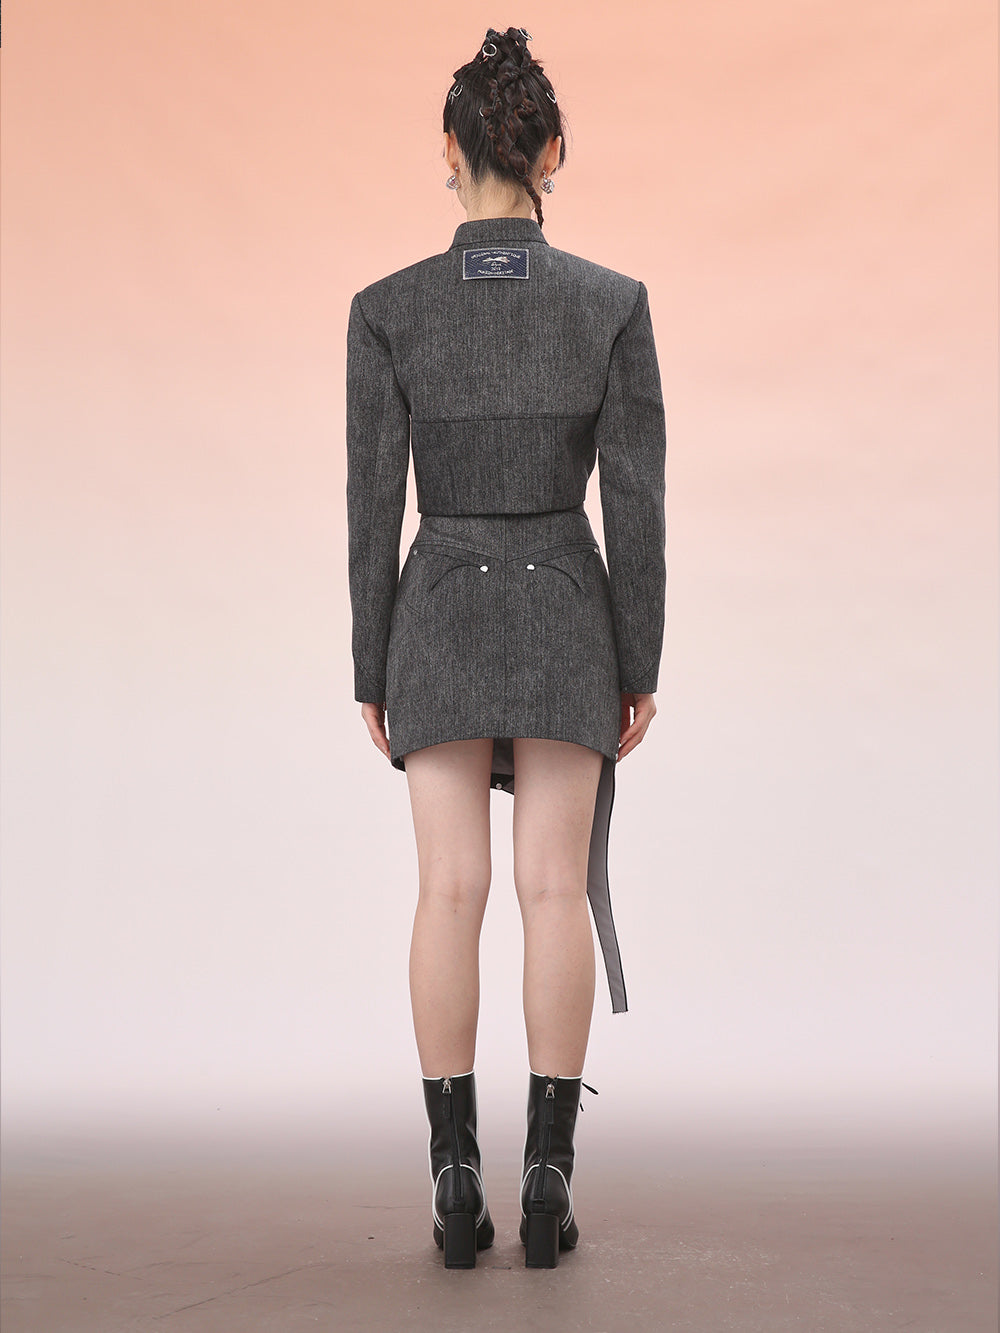 MUKZIN Black Star Shape Design Asymmetric Panel Skirt